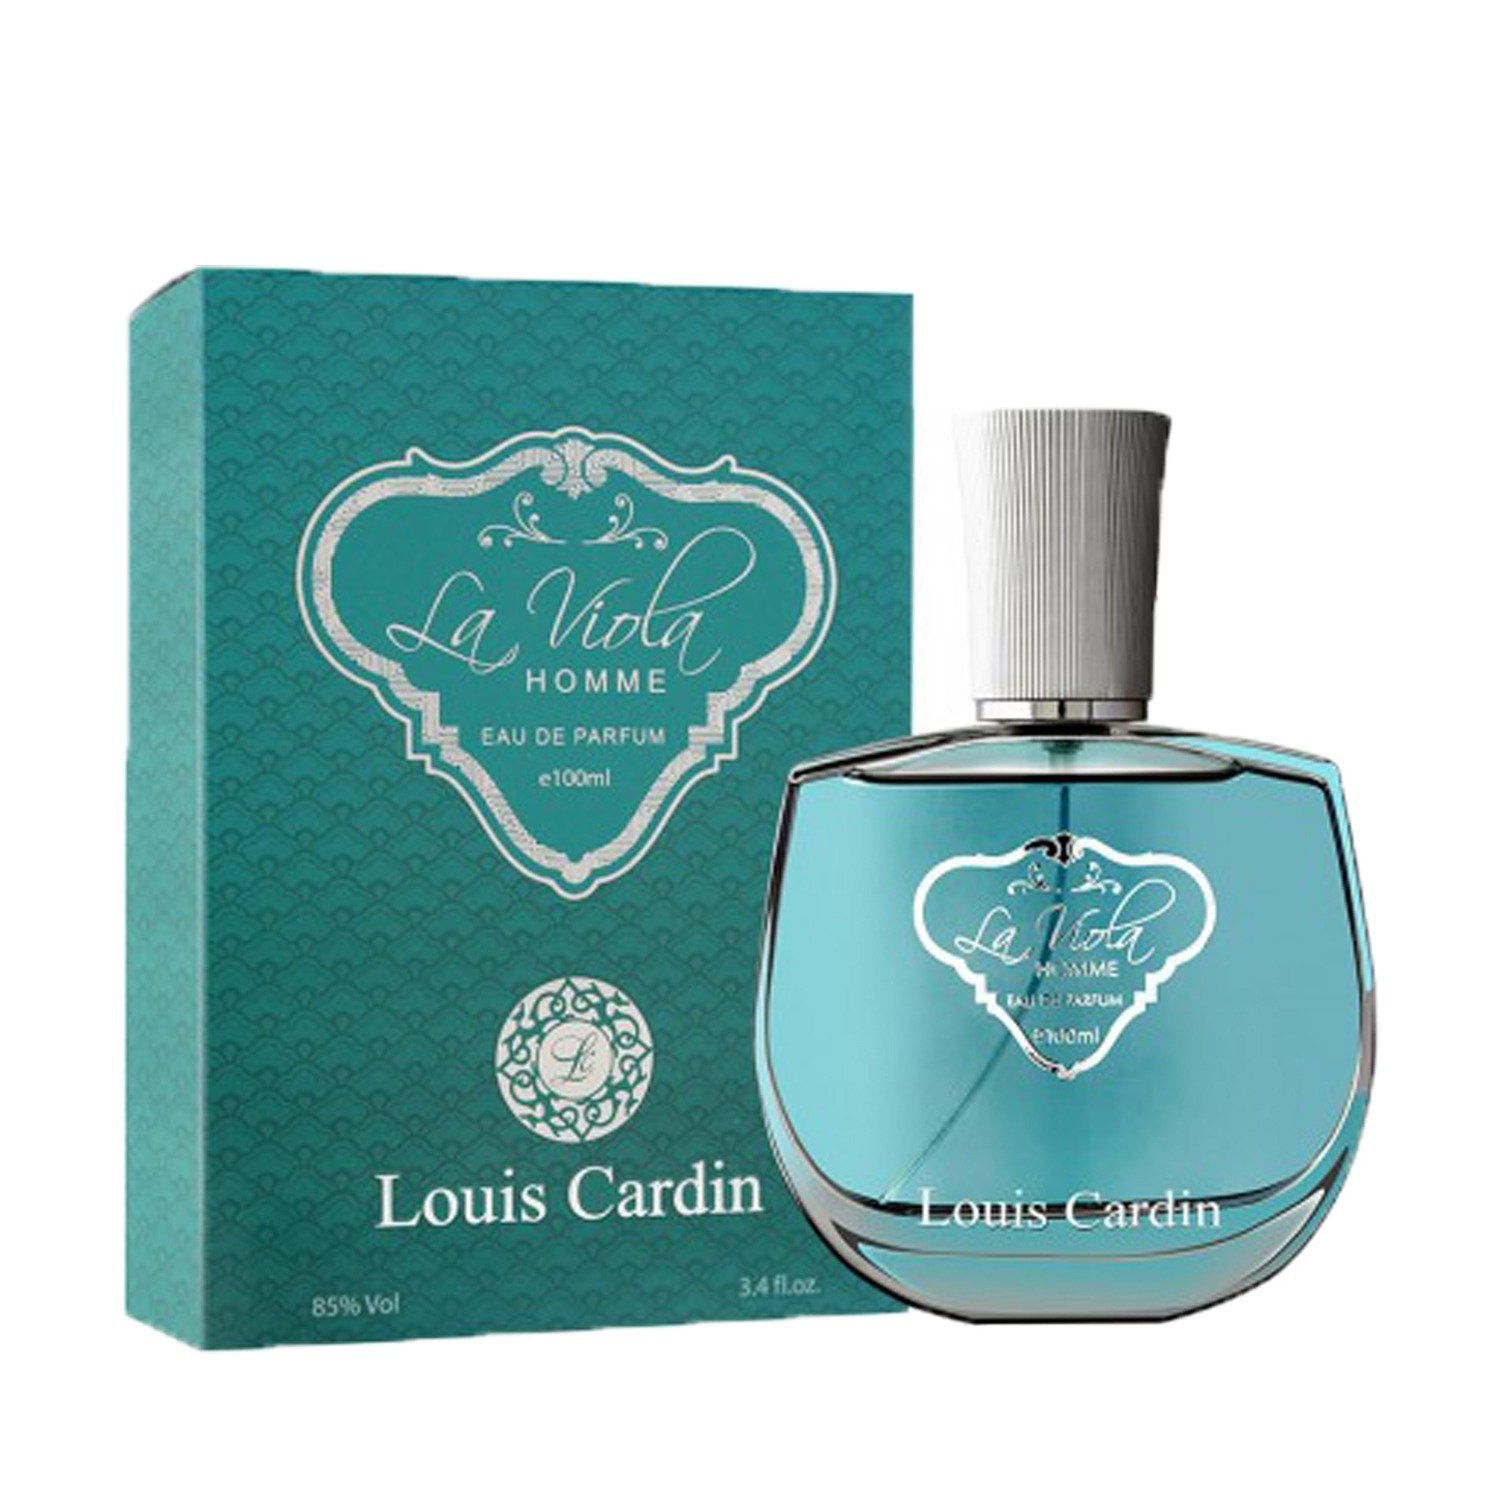 Louis Cardin La Viola Homme - Best men and women pefume cologne scent oud collection